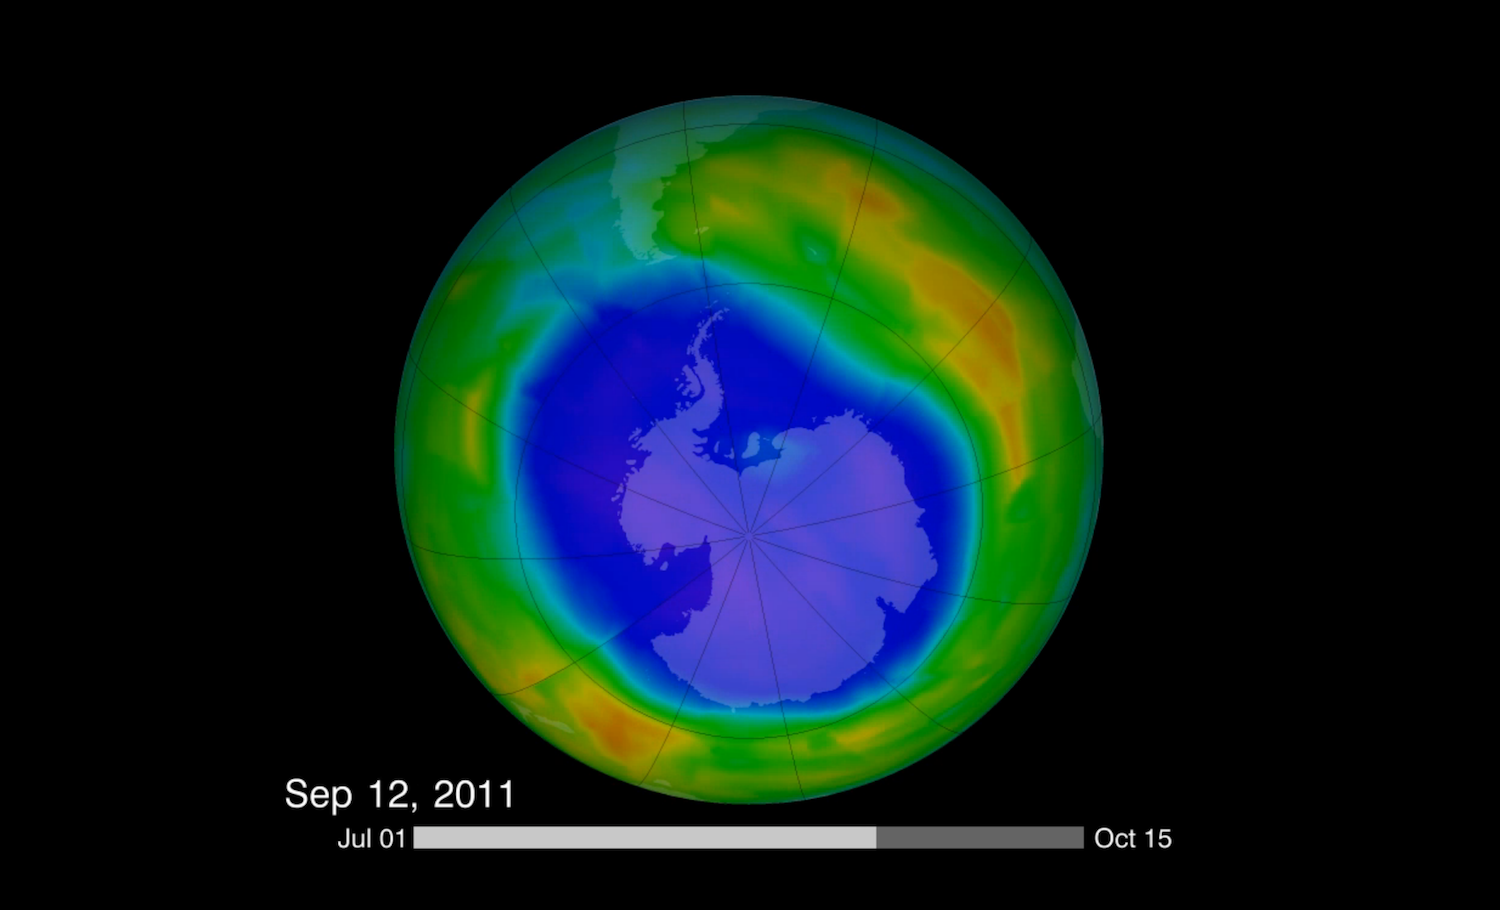 Les activités humaines ont brisé l’équilibre fragile entre destruction et formation de la couche d’ozone. Cette image montre l’étendue du trou dans la couche d’ozone, en date du 12 septembre 2011. © NASA Goddard Space Flight Center, Flickr, CC by 2.0